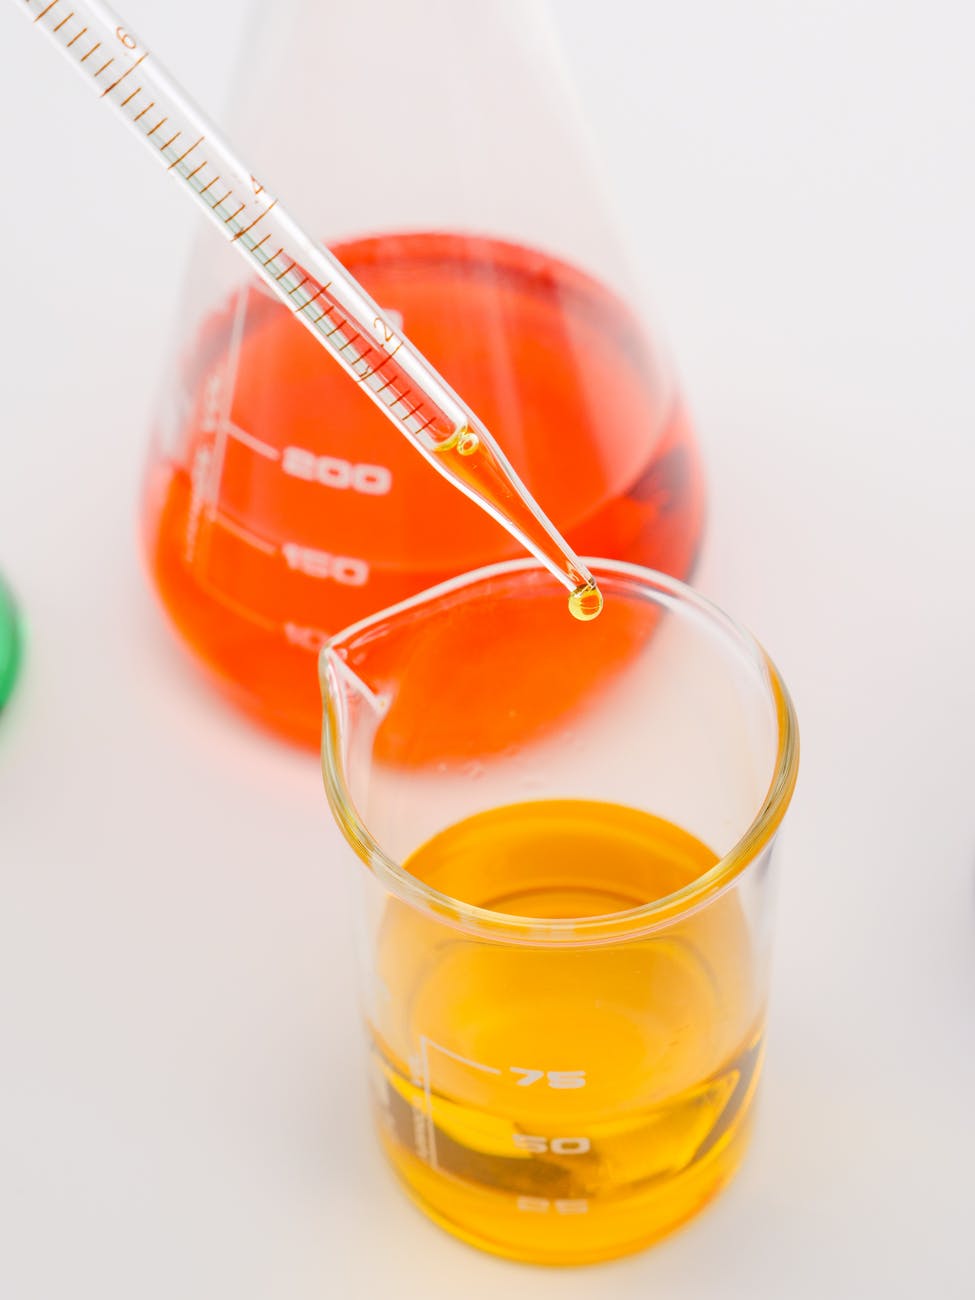 Óleo de laranja e pimenta tem ação antimicrobiana, diz estudo